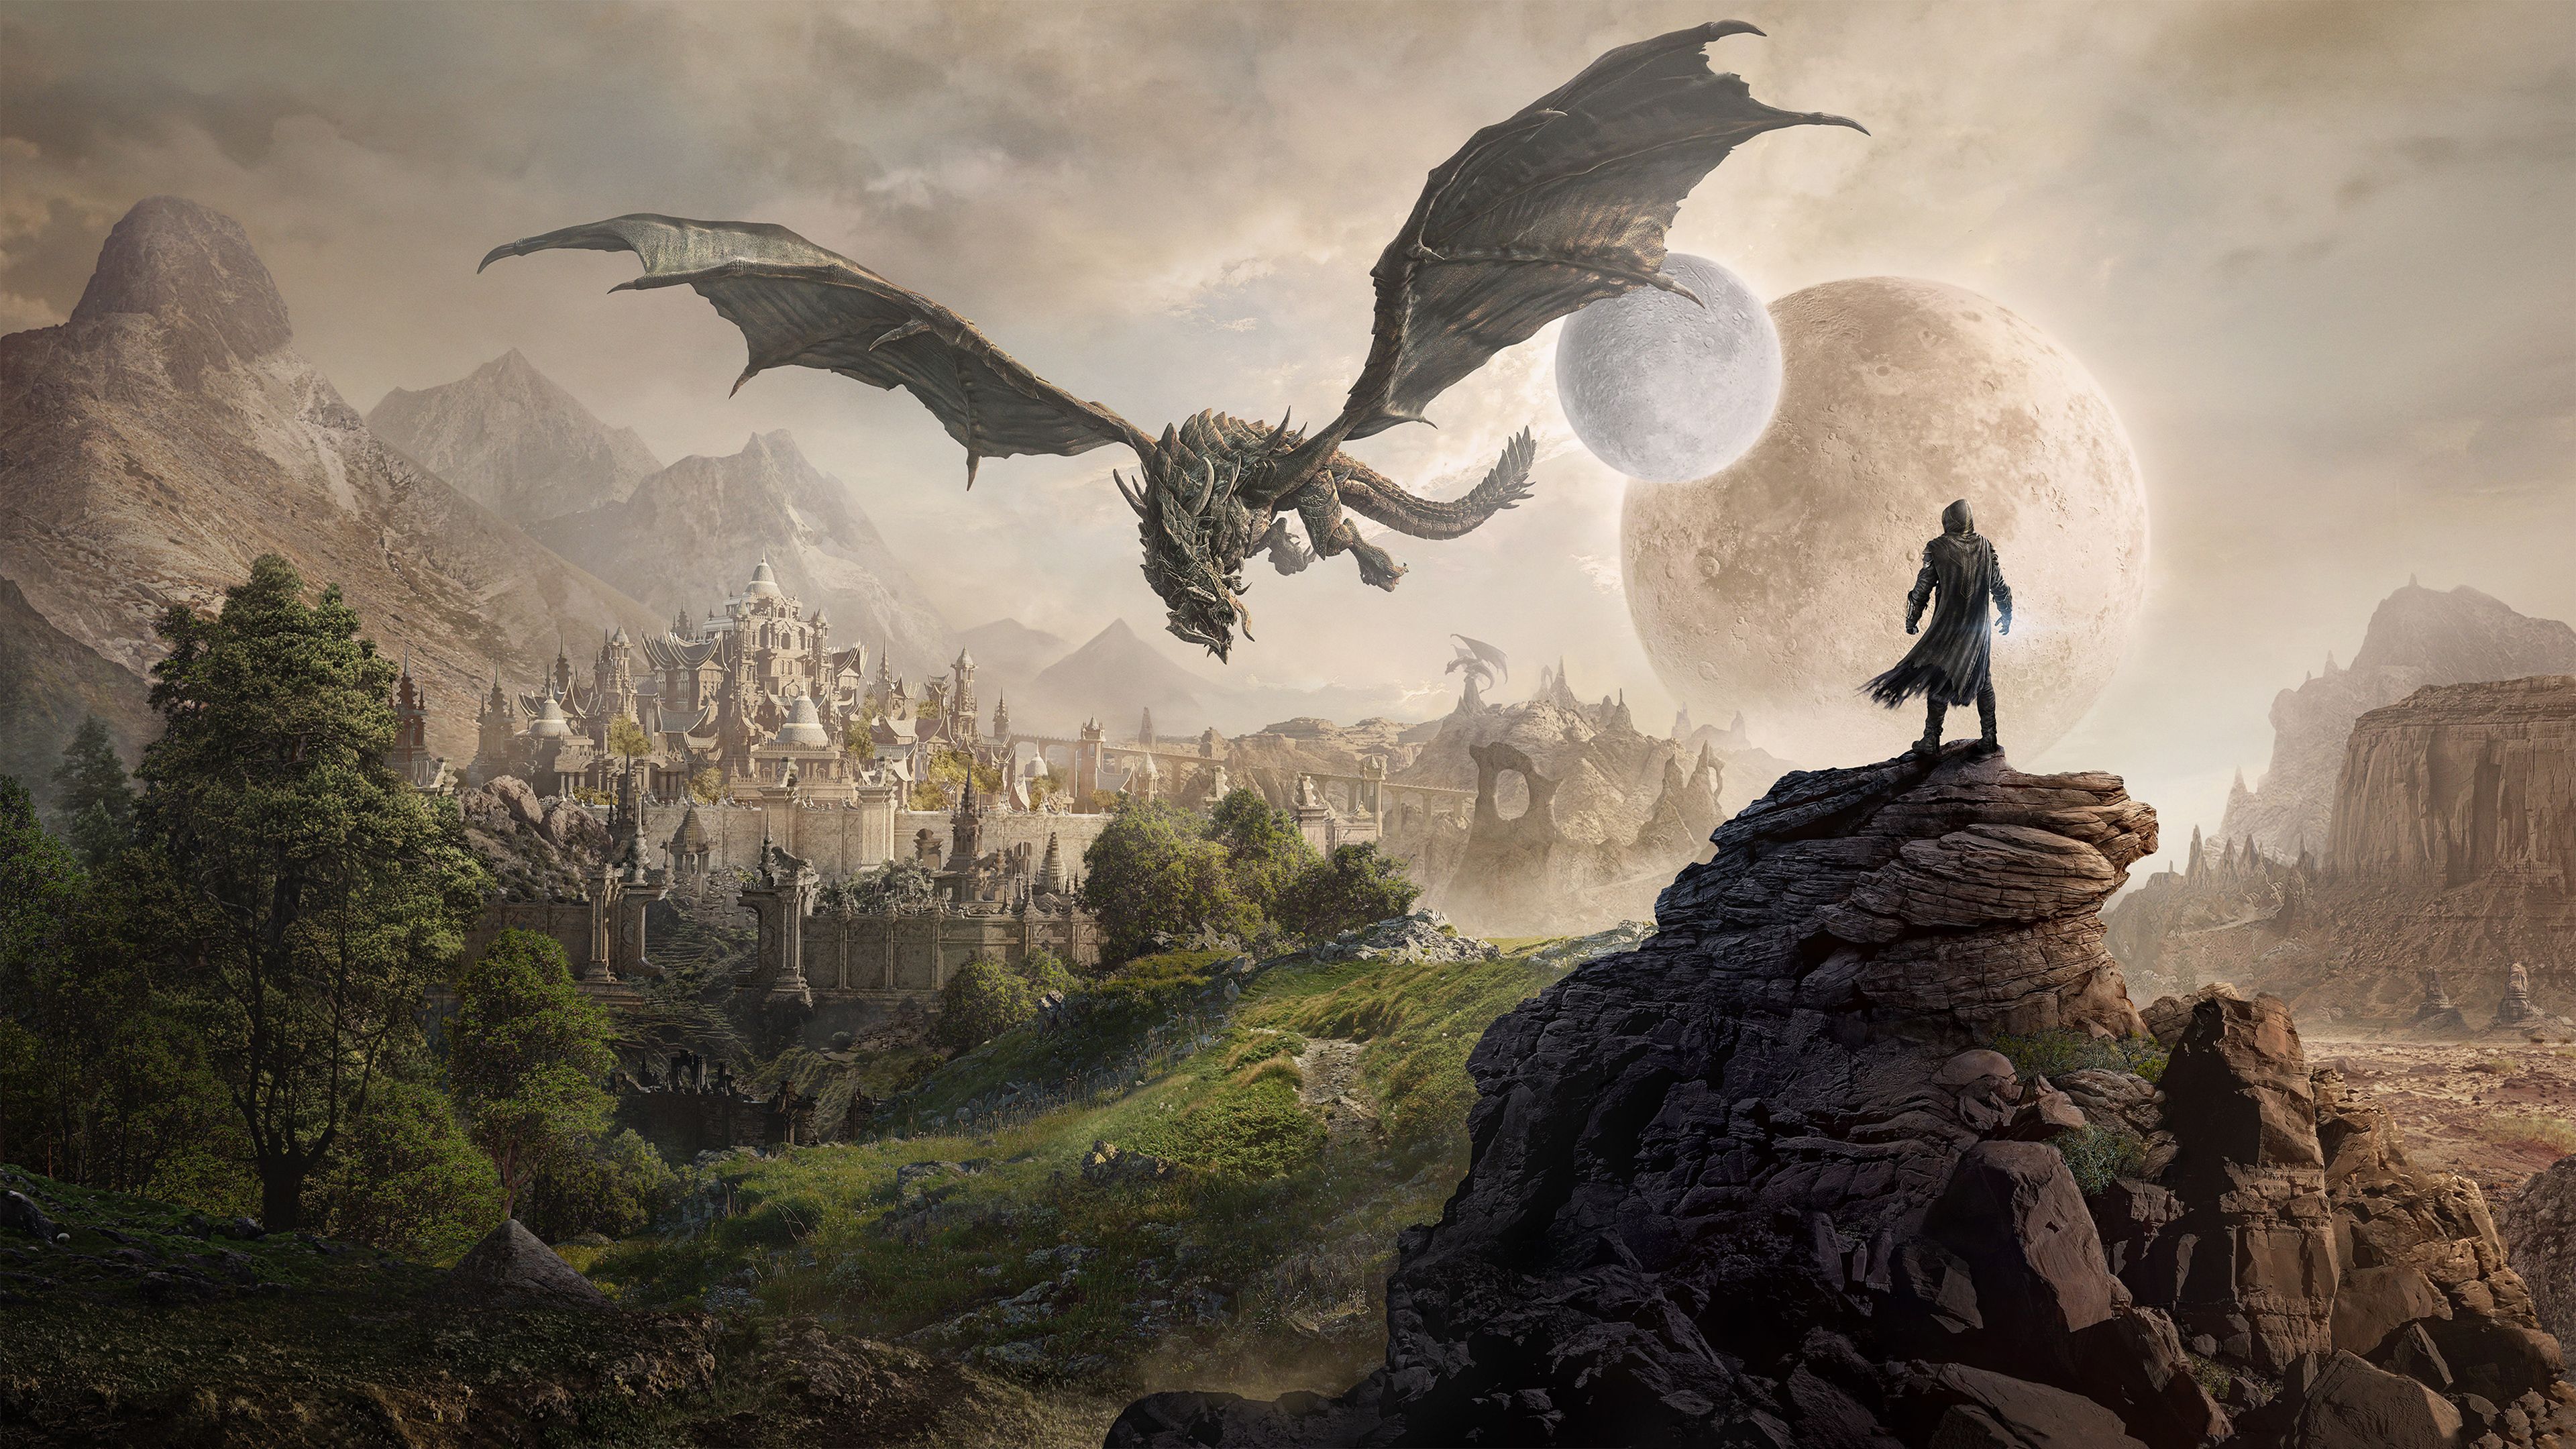 Elsweyr The Elder Scrolls Online 2019 4k, juegos HD, fondos de pantalla 4k